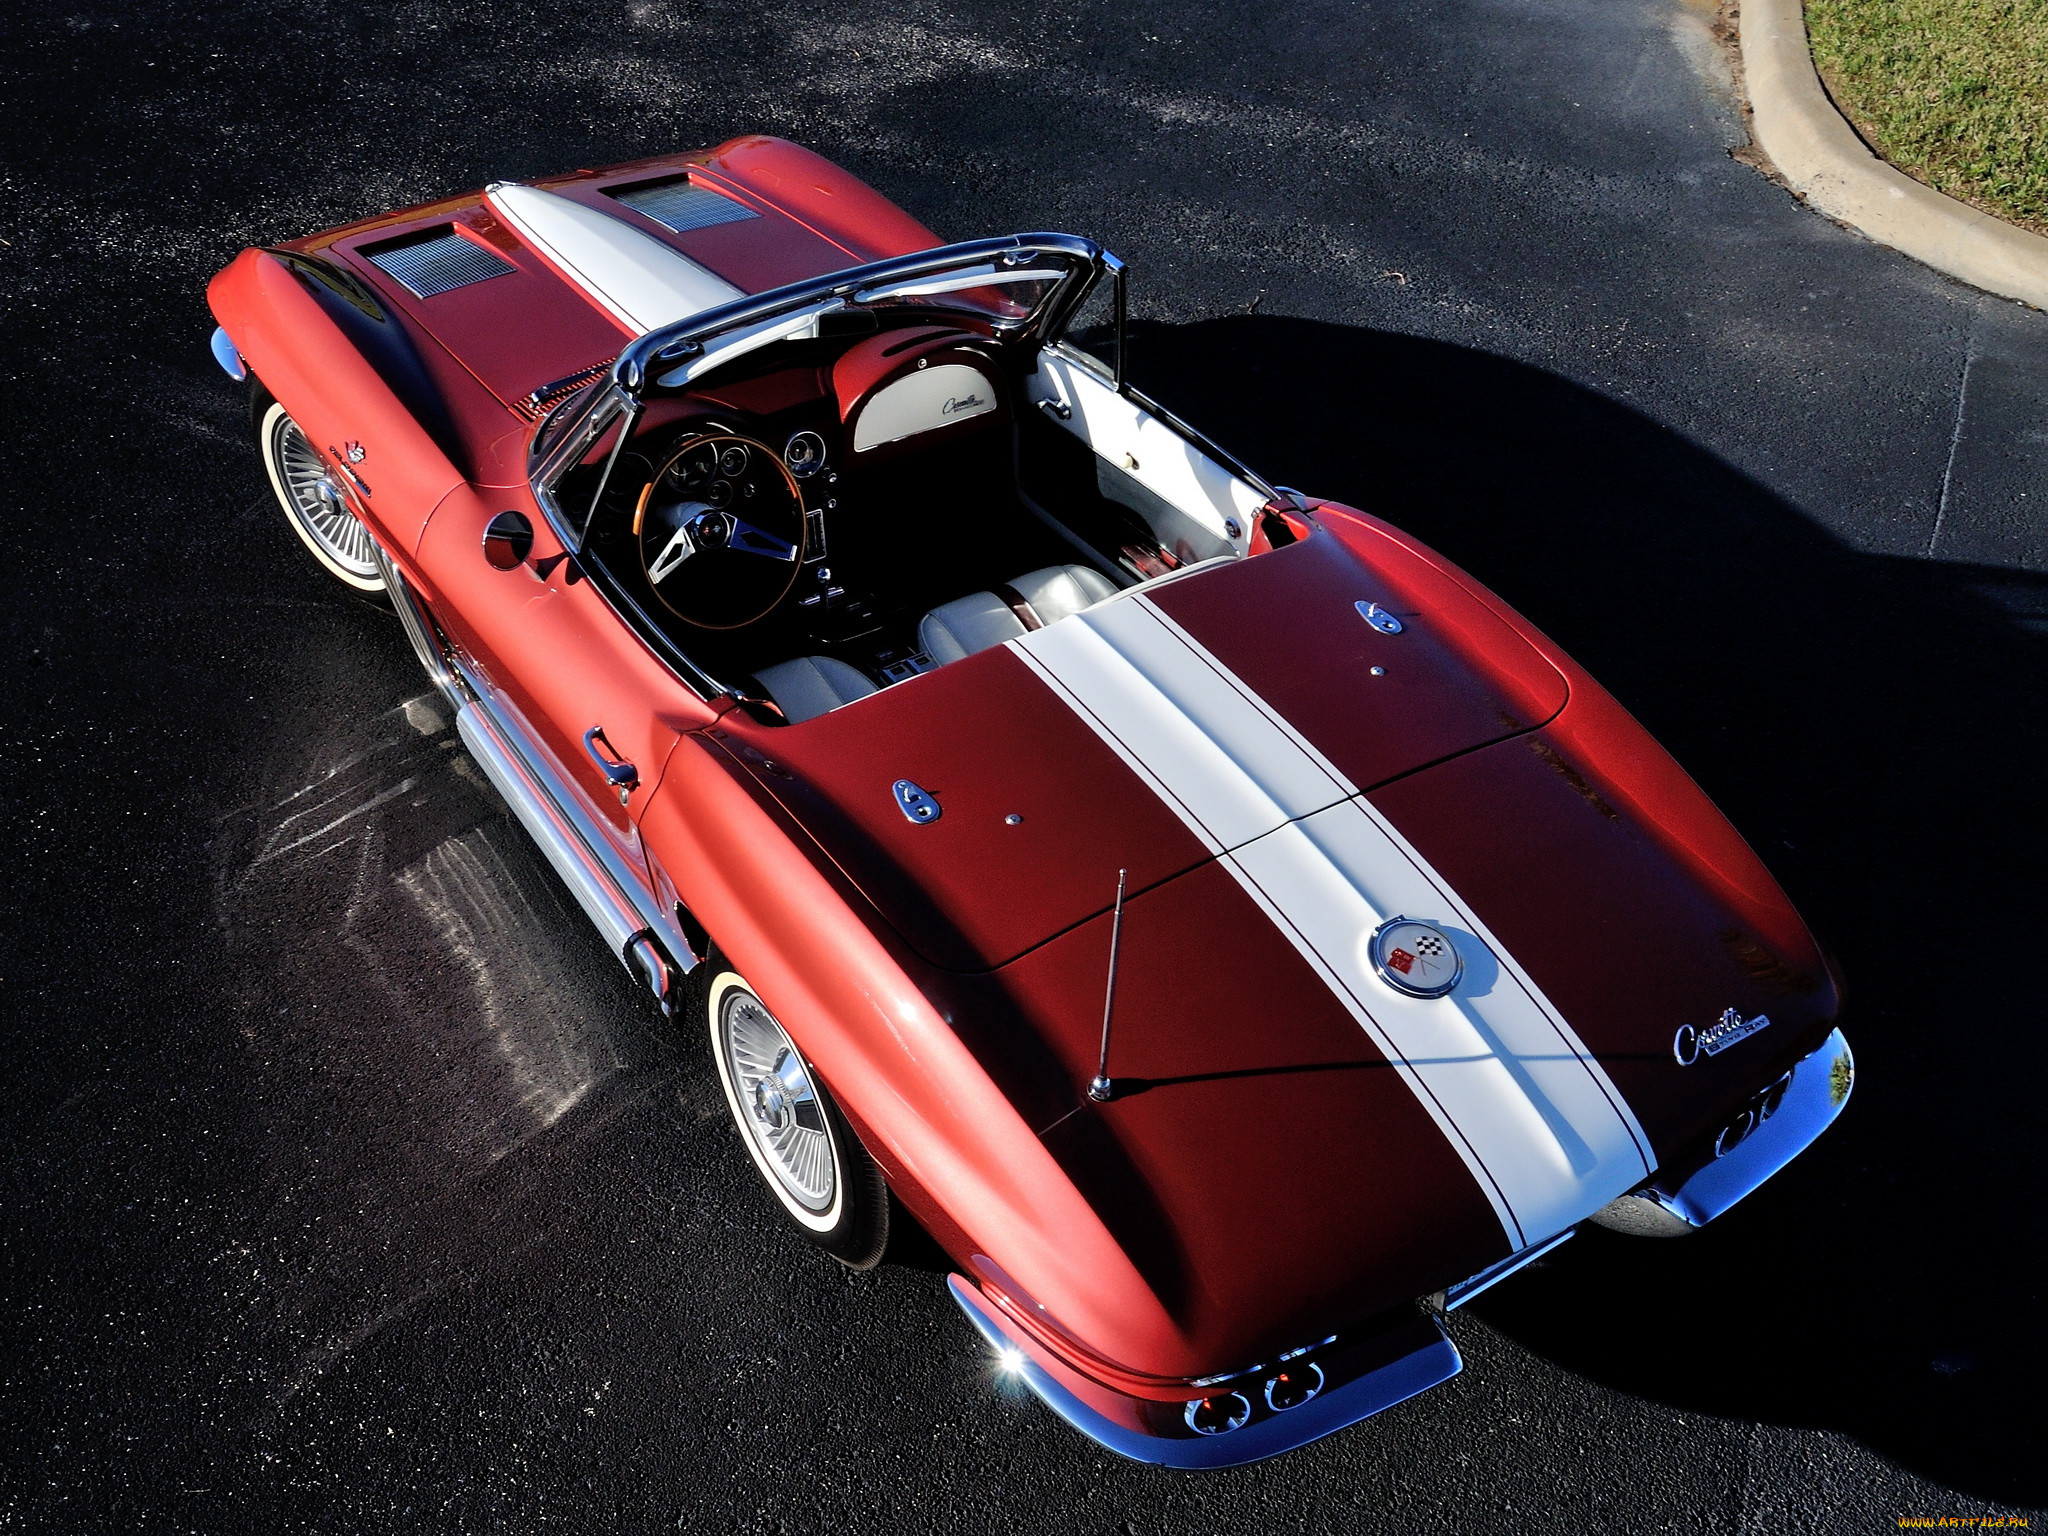 corvette sting ray convertible show car replica, , corvette, replica